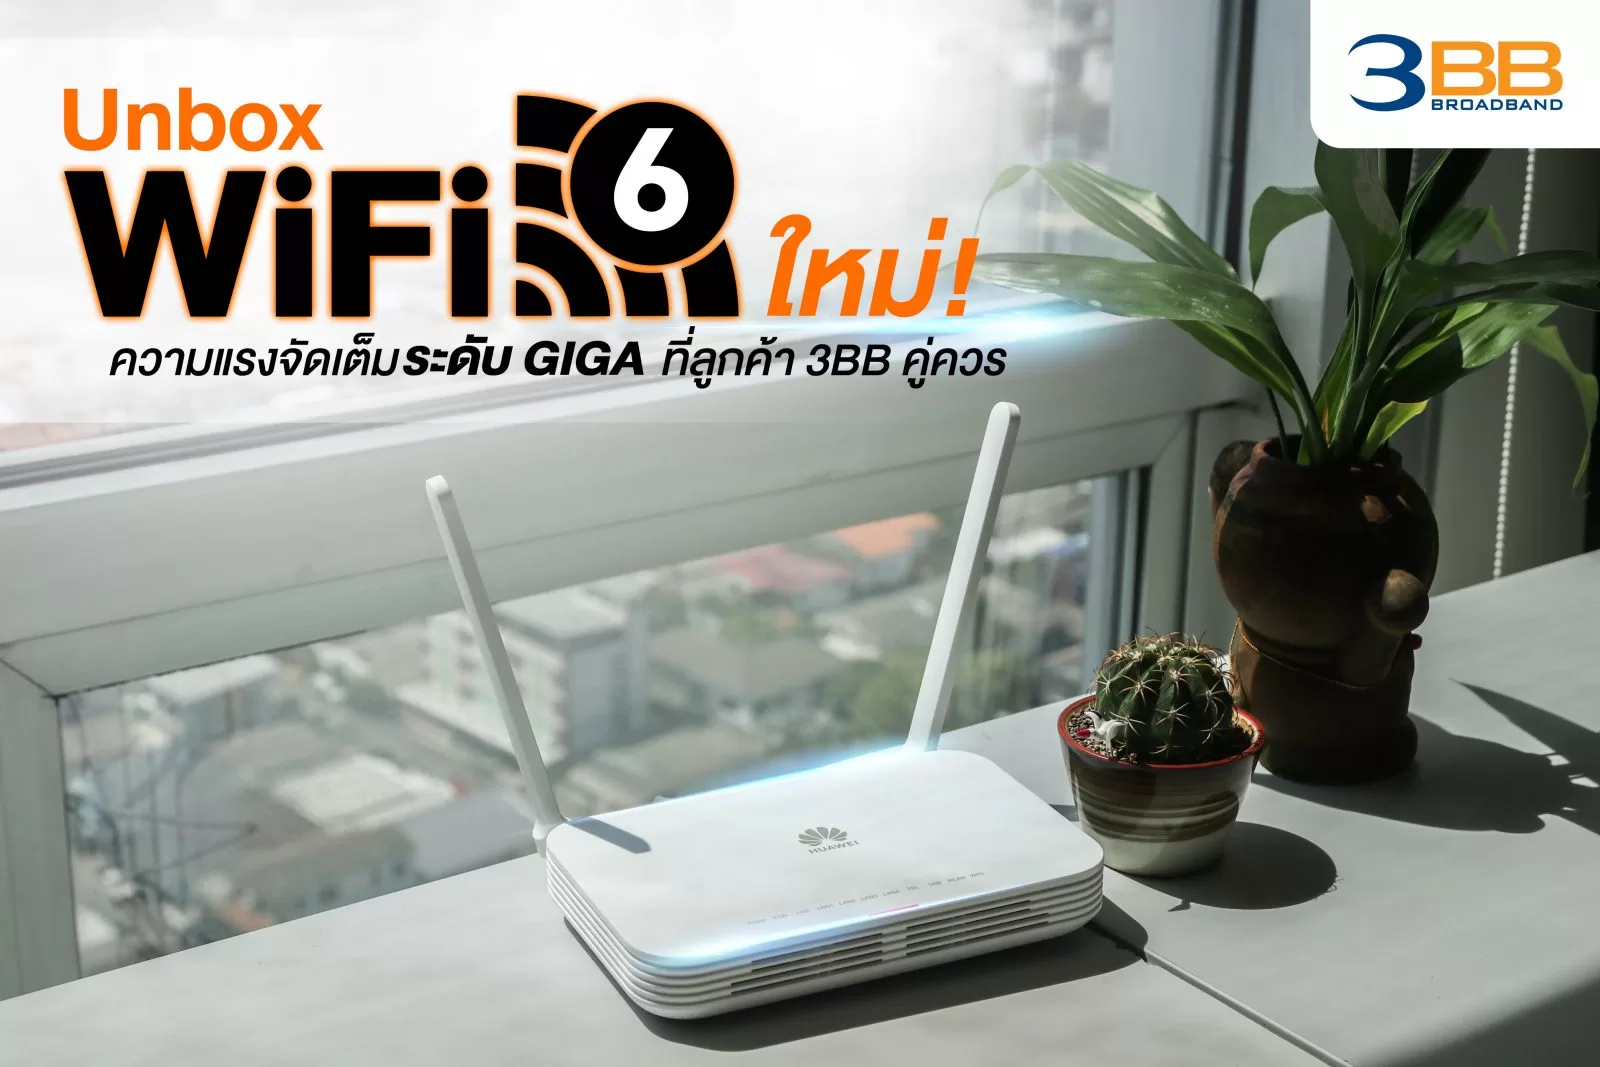 1 ปก Router WiFi6 | 3bb | แกะกล่องเราเตอร์ฟรีจาก 3BB รุ่นใหม่ รองรับ Wi-Fi 6!